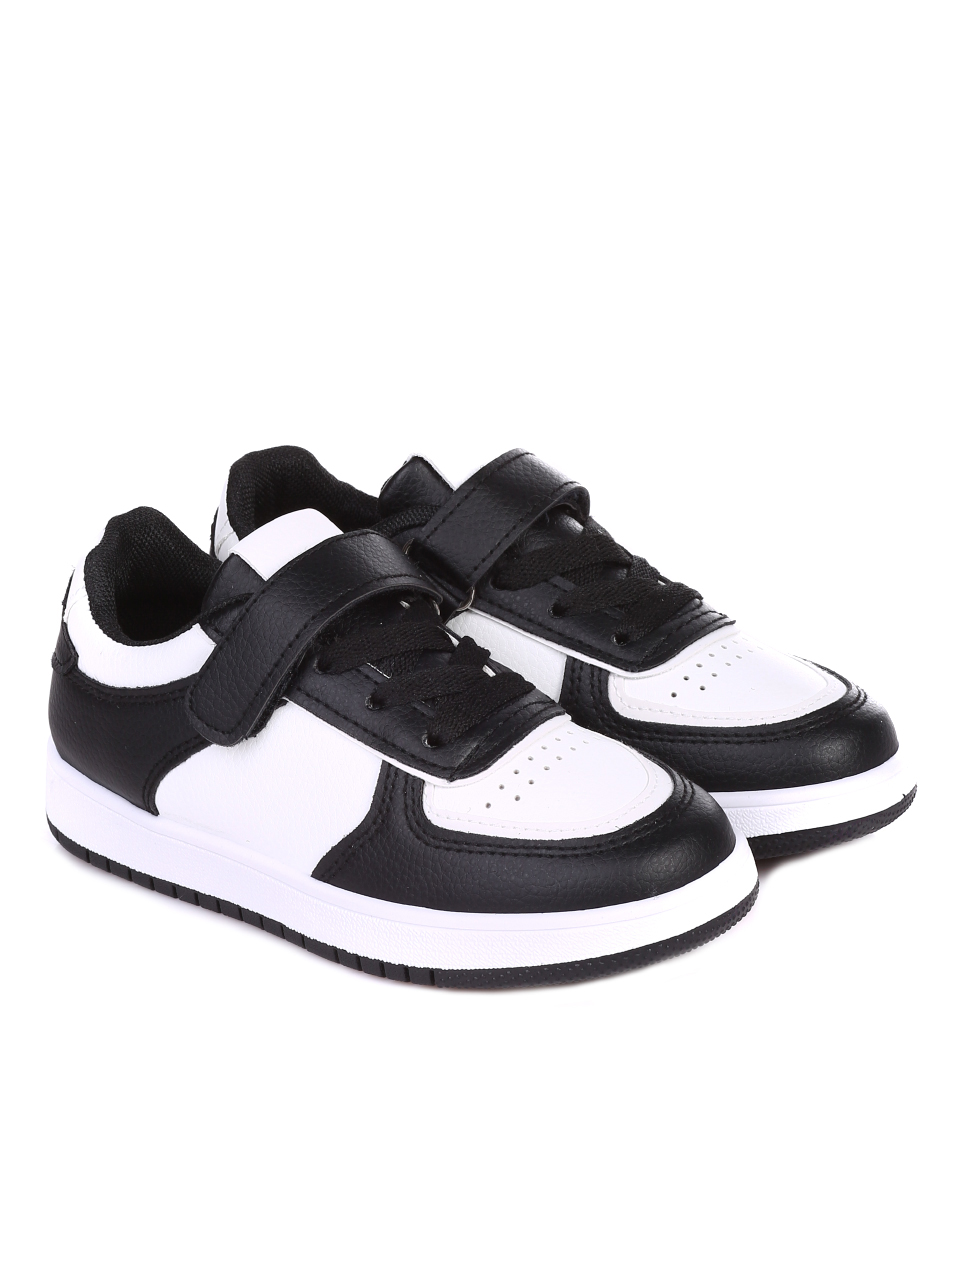 Ежедневни детски обувки в черно и бяло  18U-22001 black/white